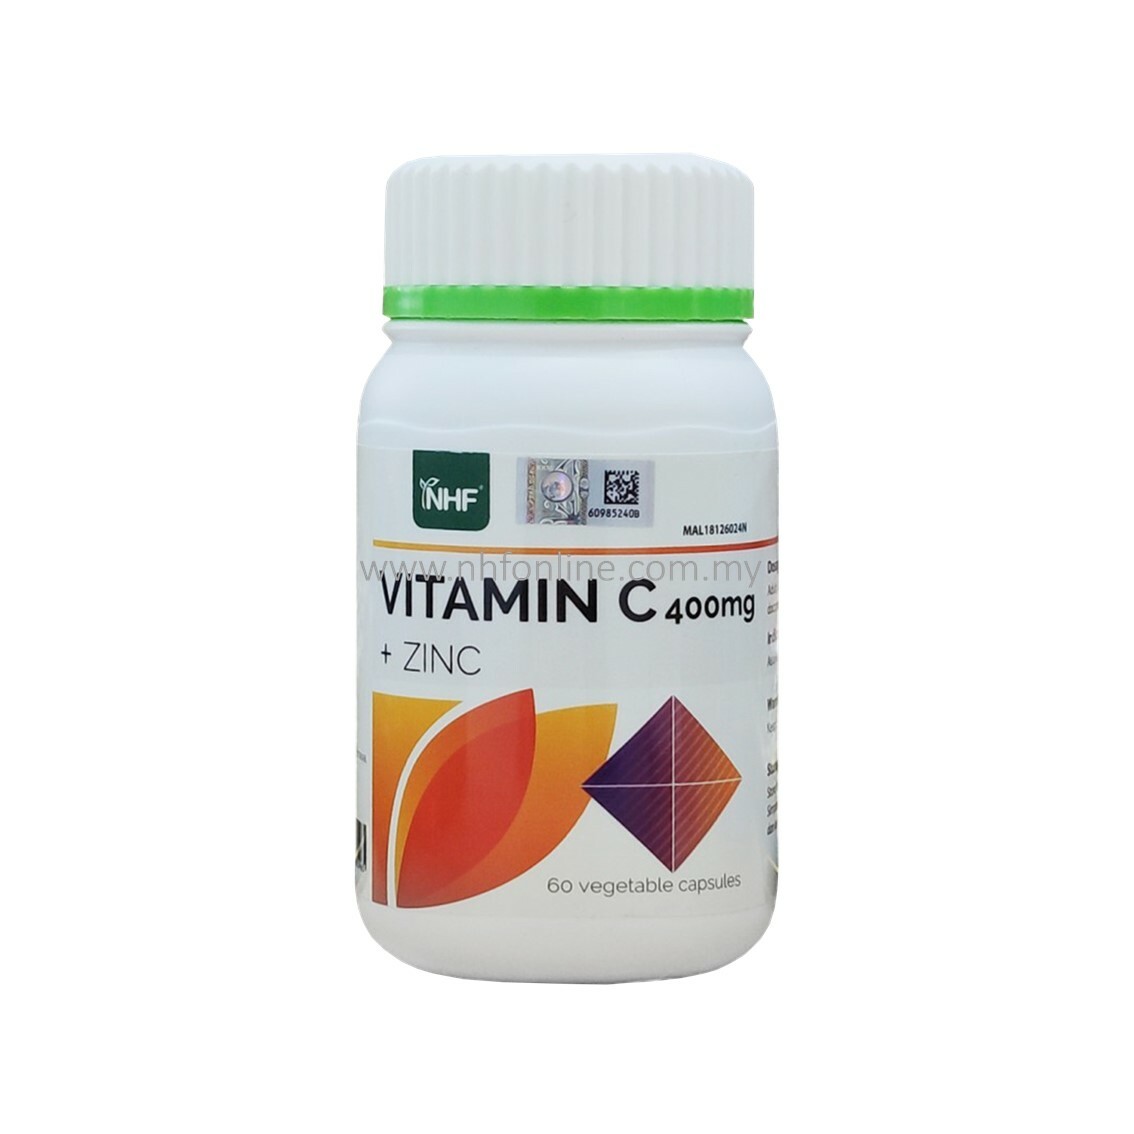 Vitamin zinc